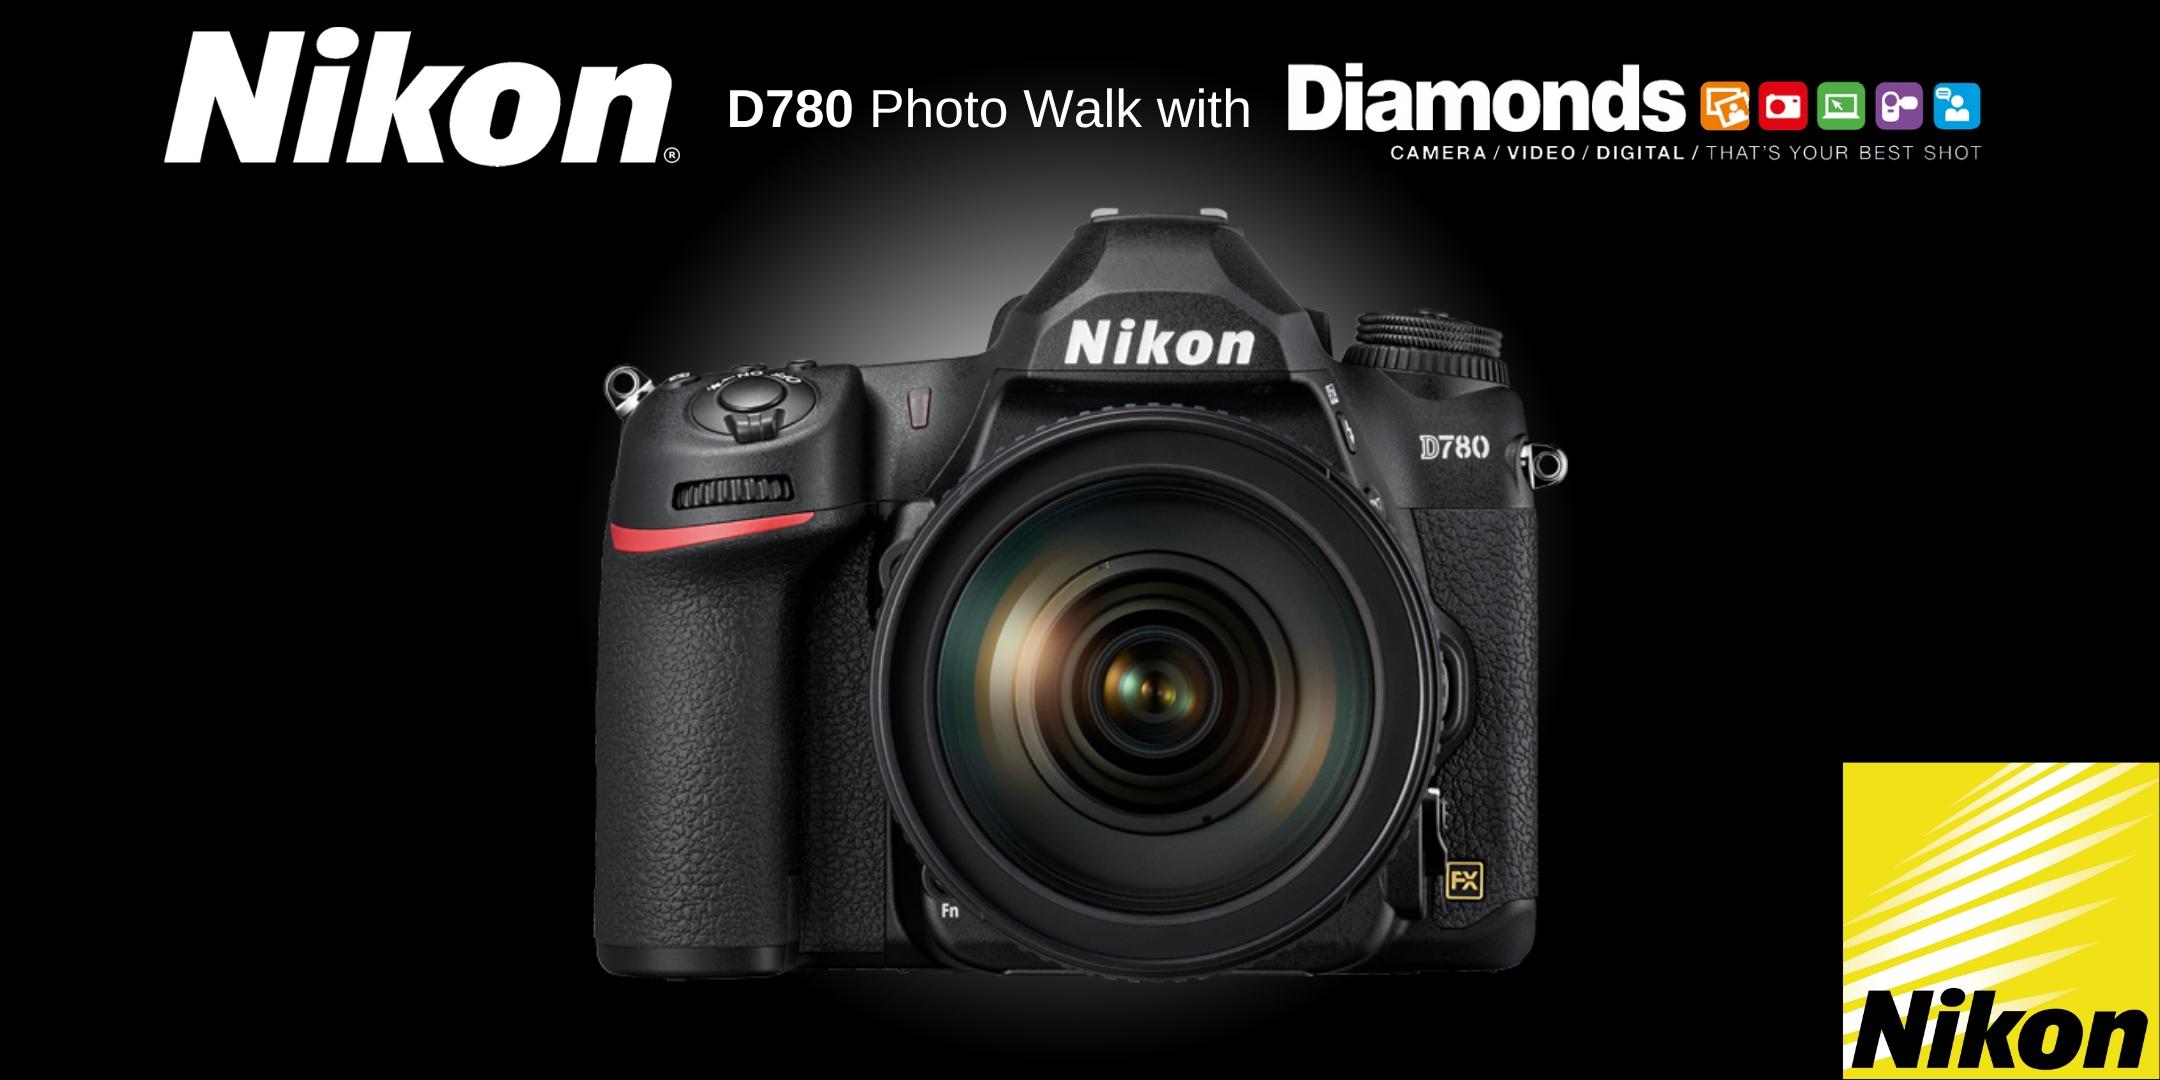 Nikon D780 Photo Walk with Diamonds Camera & Toban from Nikon Australia